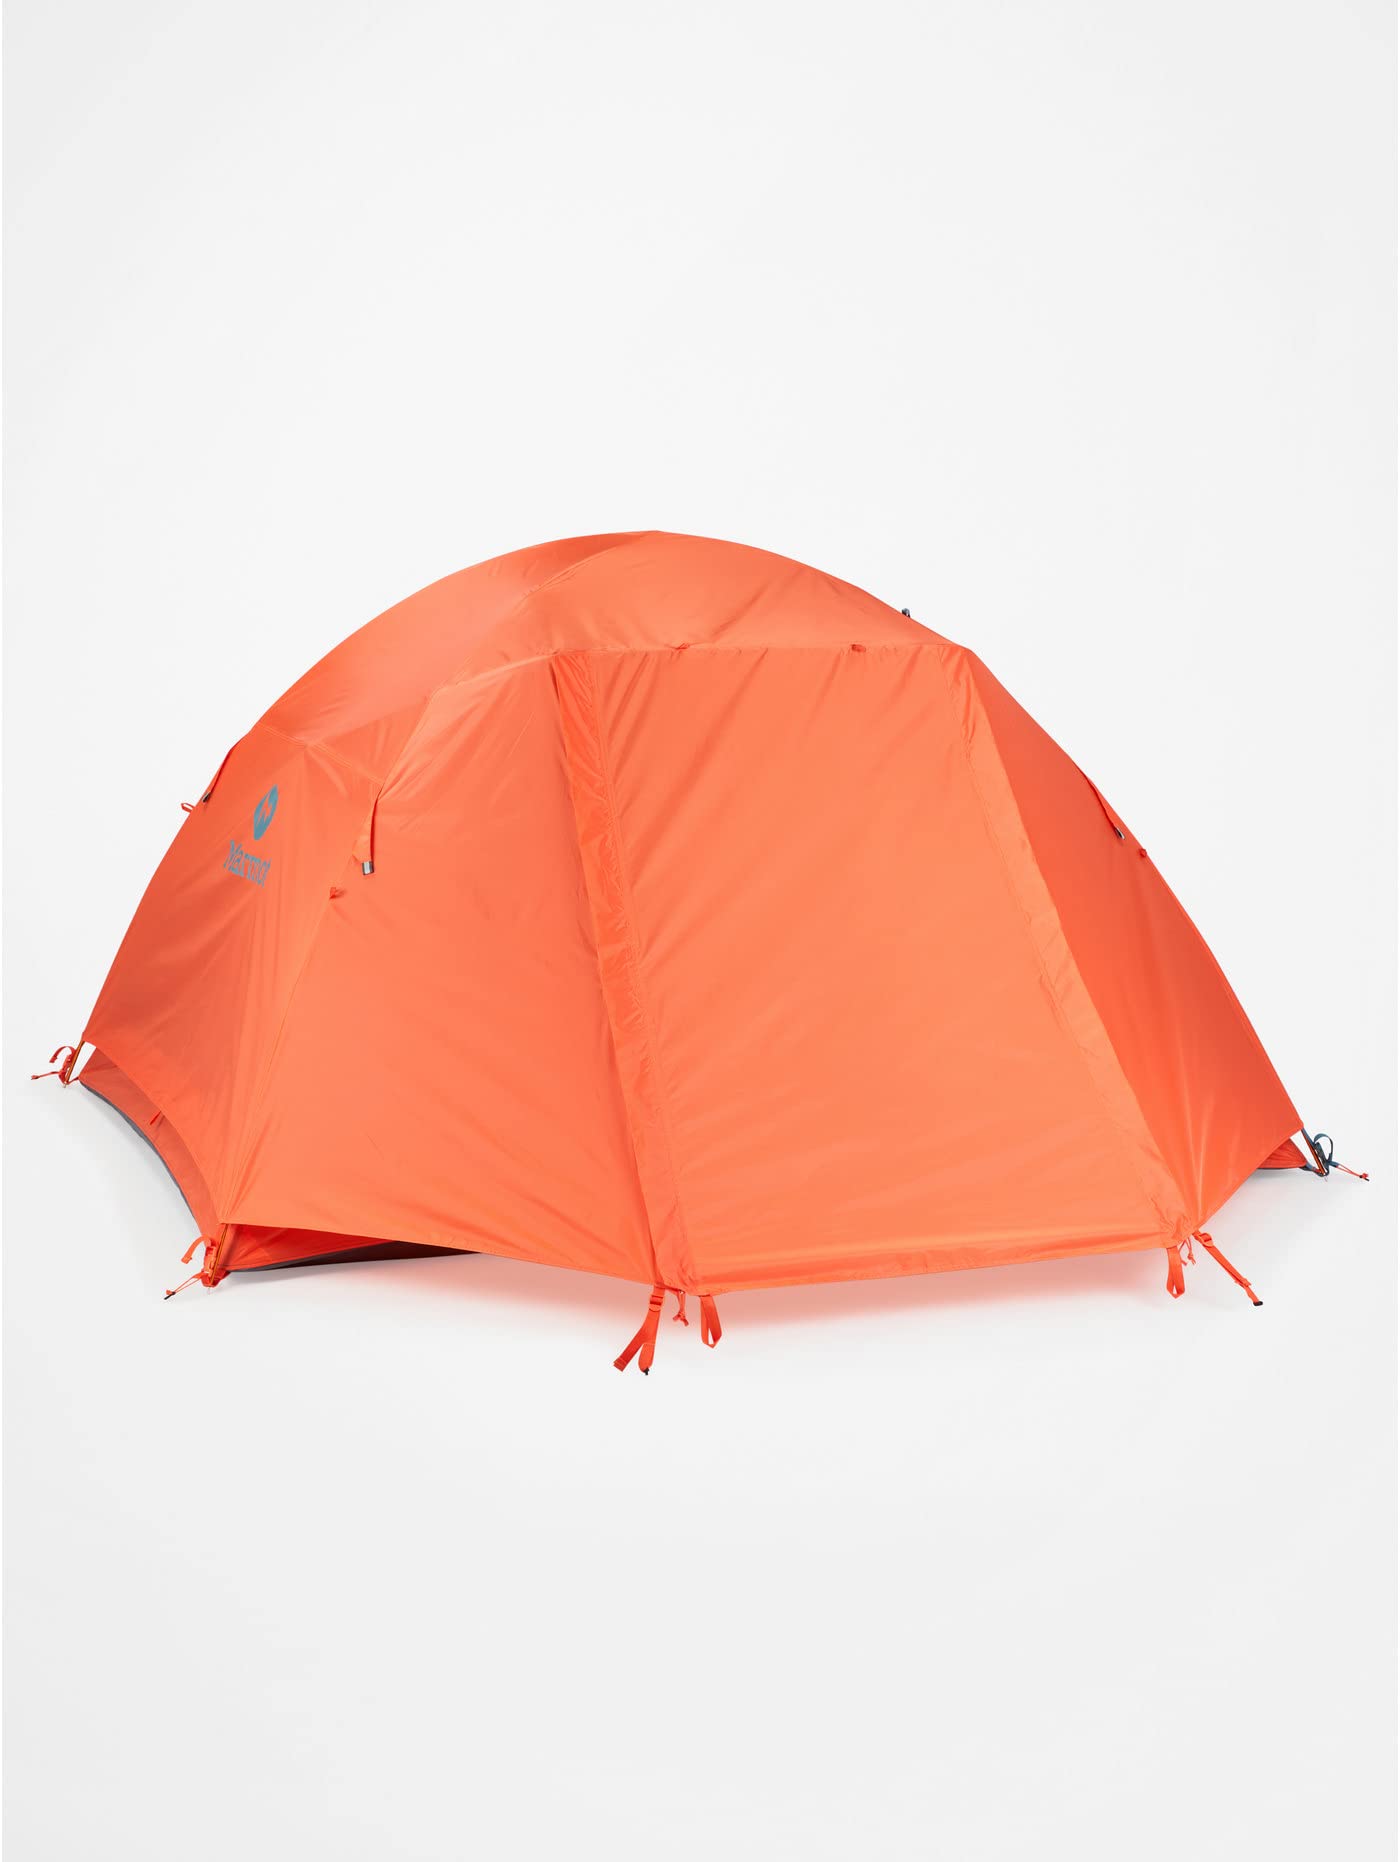 送料無料Marmot Catalyst 3P Lightweight 23-person Trekking Tent Waterproof Backpacking Tent for Camping and Hiking Red